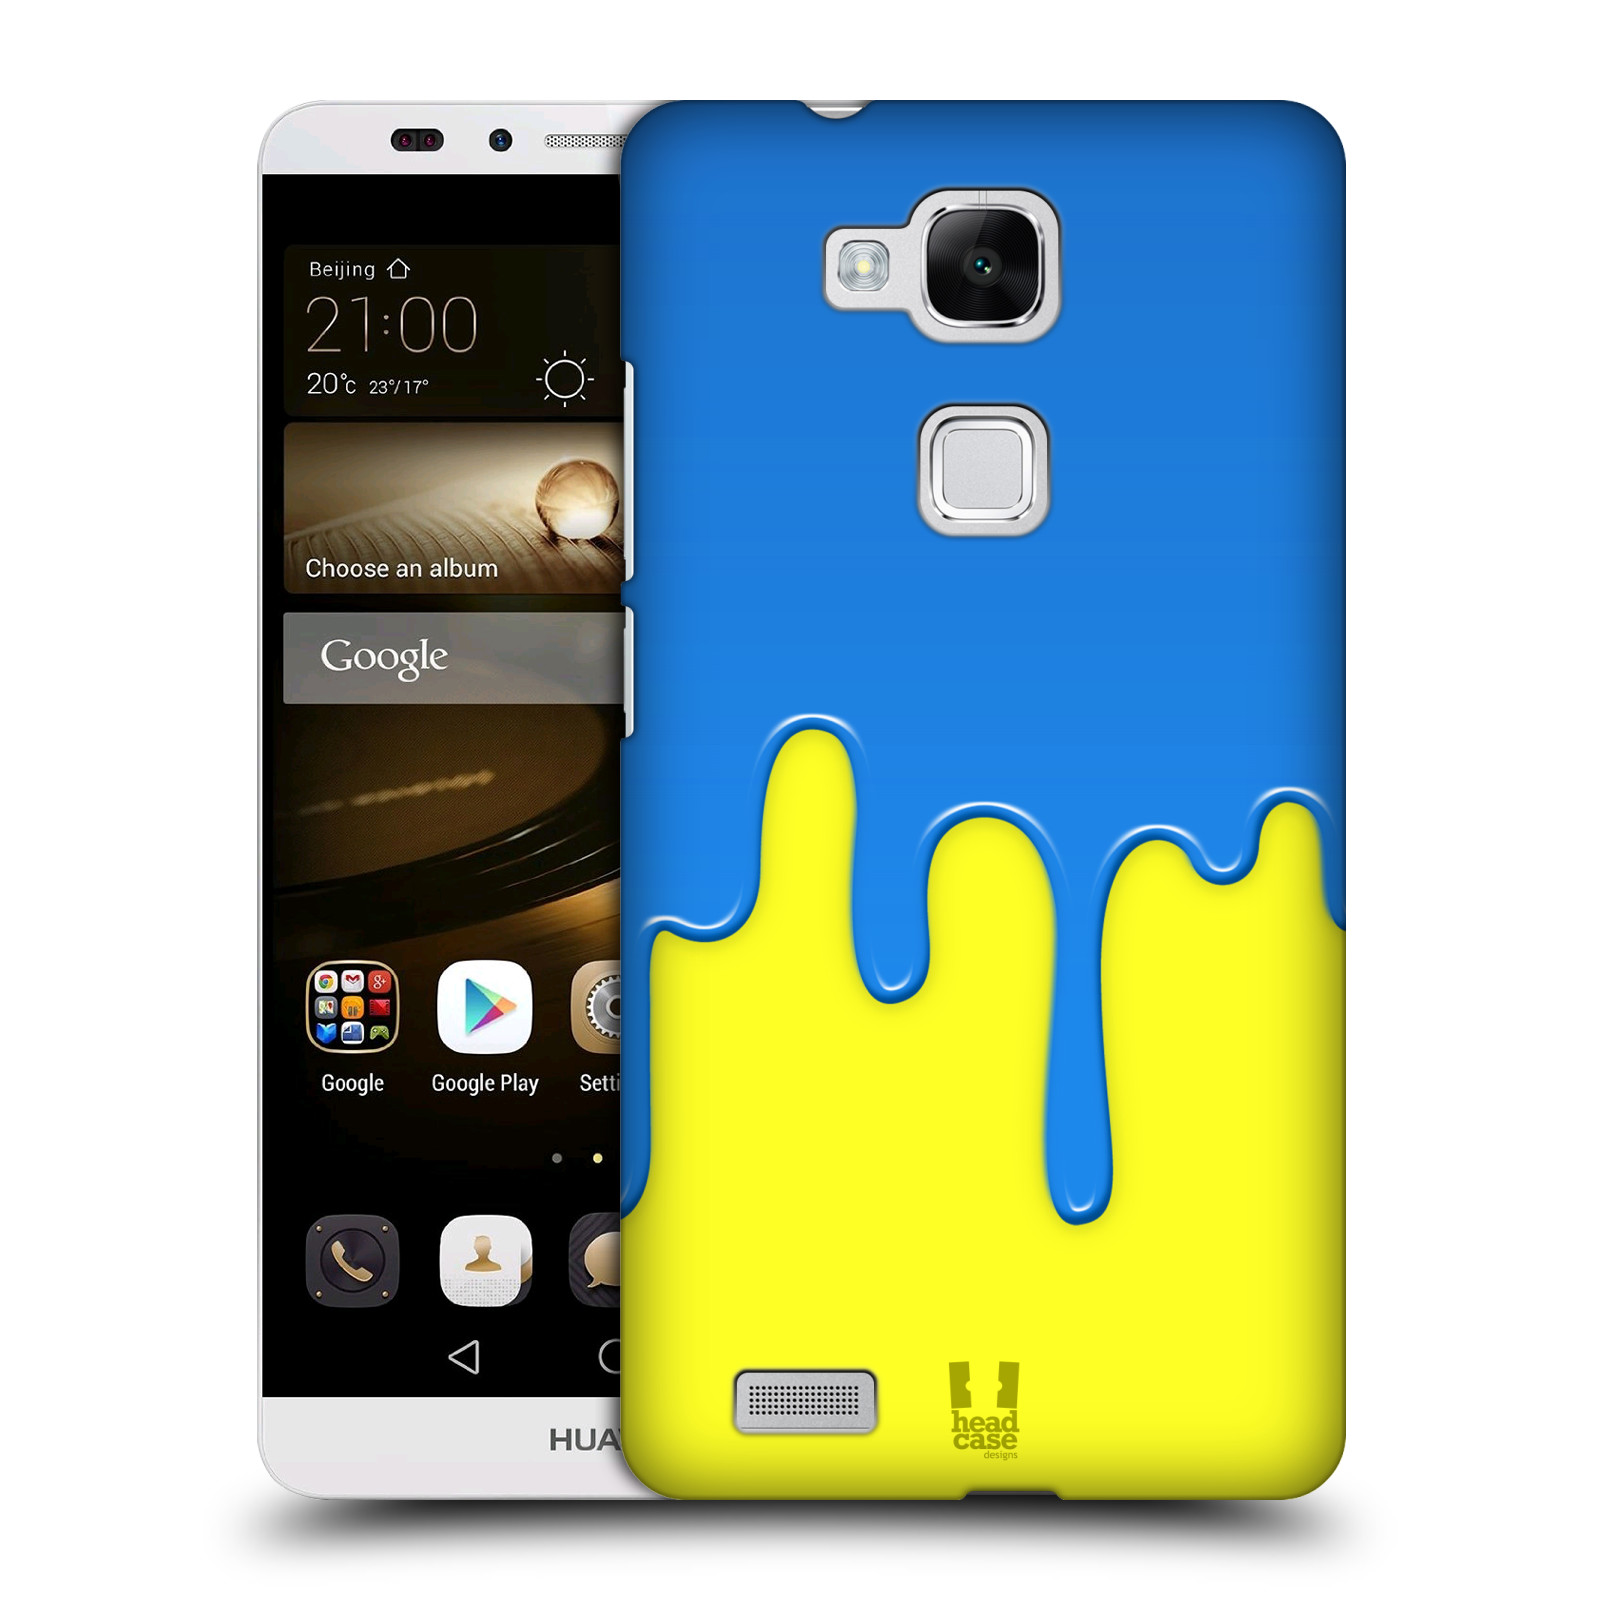 HEAD CASE plastový obal na mobil Huawei Mate 7 vzor Barevná záplava polovina MODRÁ ŽLUTÁ